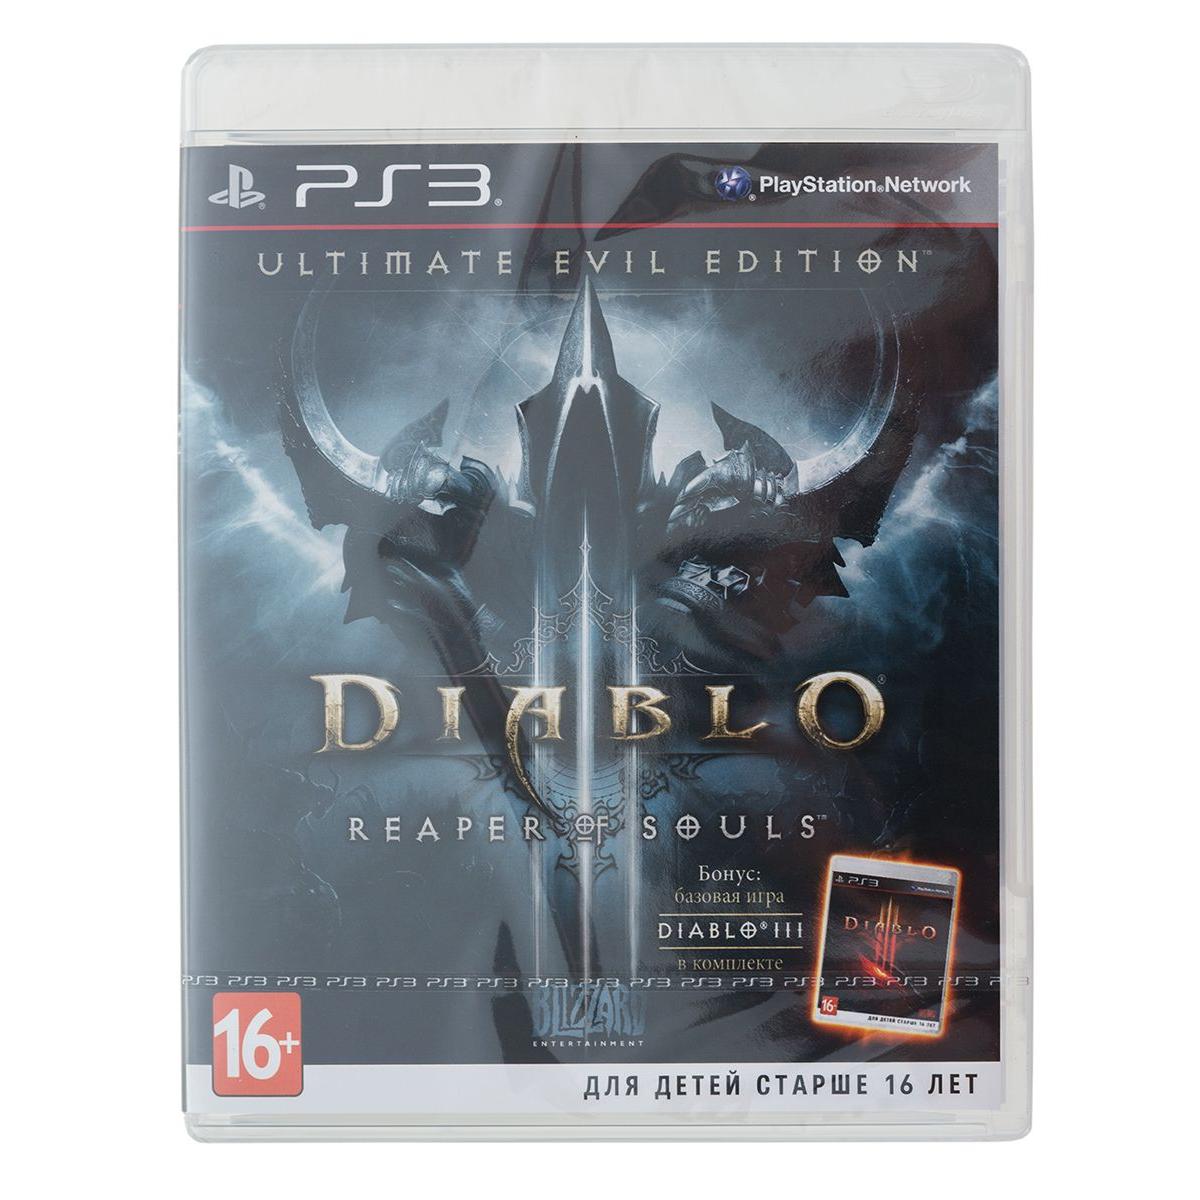 Диабло 3 пс 3. Диабло 3 Reaper of Souls. Diablo III (3): Reaper of Souls. Diablo 3 Reaper of Souls Ultimate Evil Edition ps3. Diablo III Reaper of Souls читы на платформе PLAYSTATION 3.